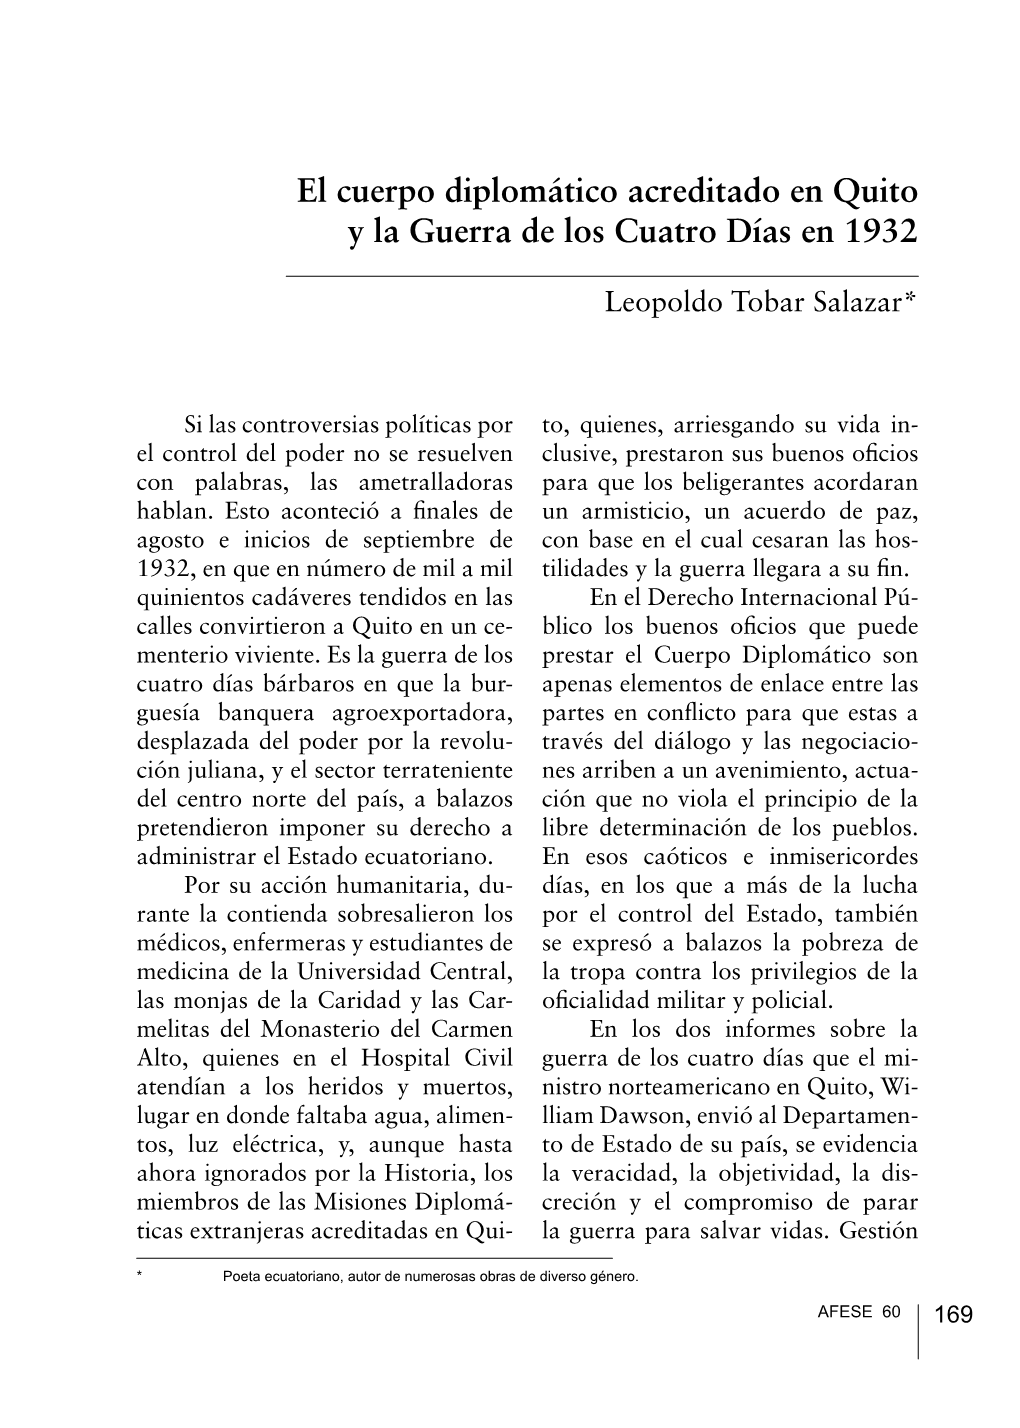 El Cuerpo Diplomático Acreditado En Quito Y La Guerra De Los Cuatro Días En 1932